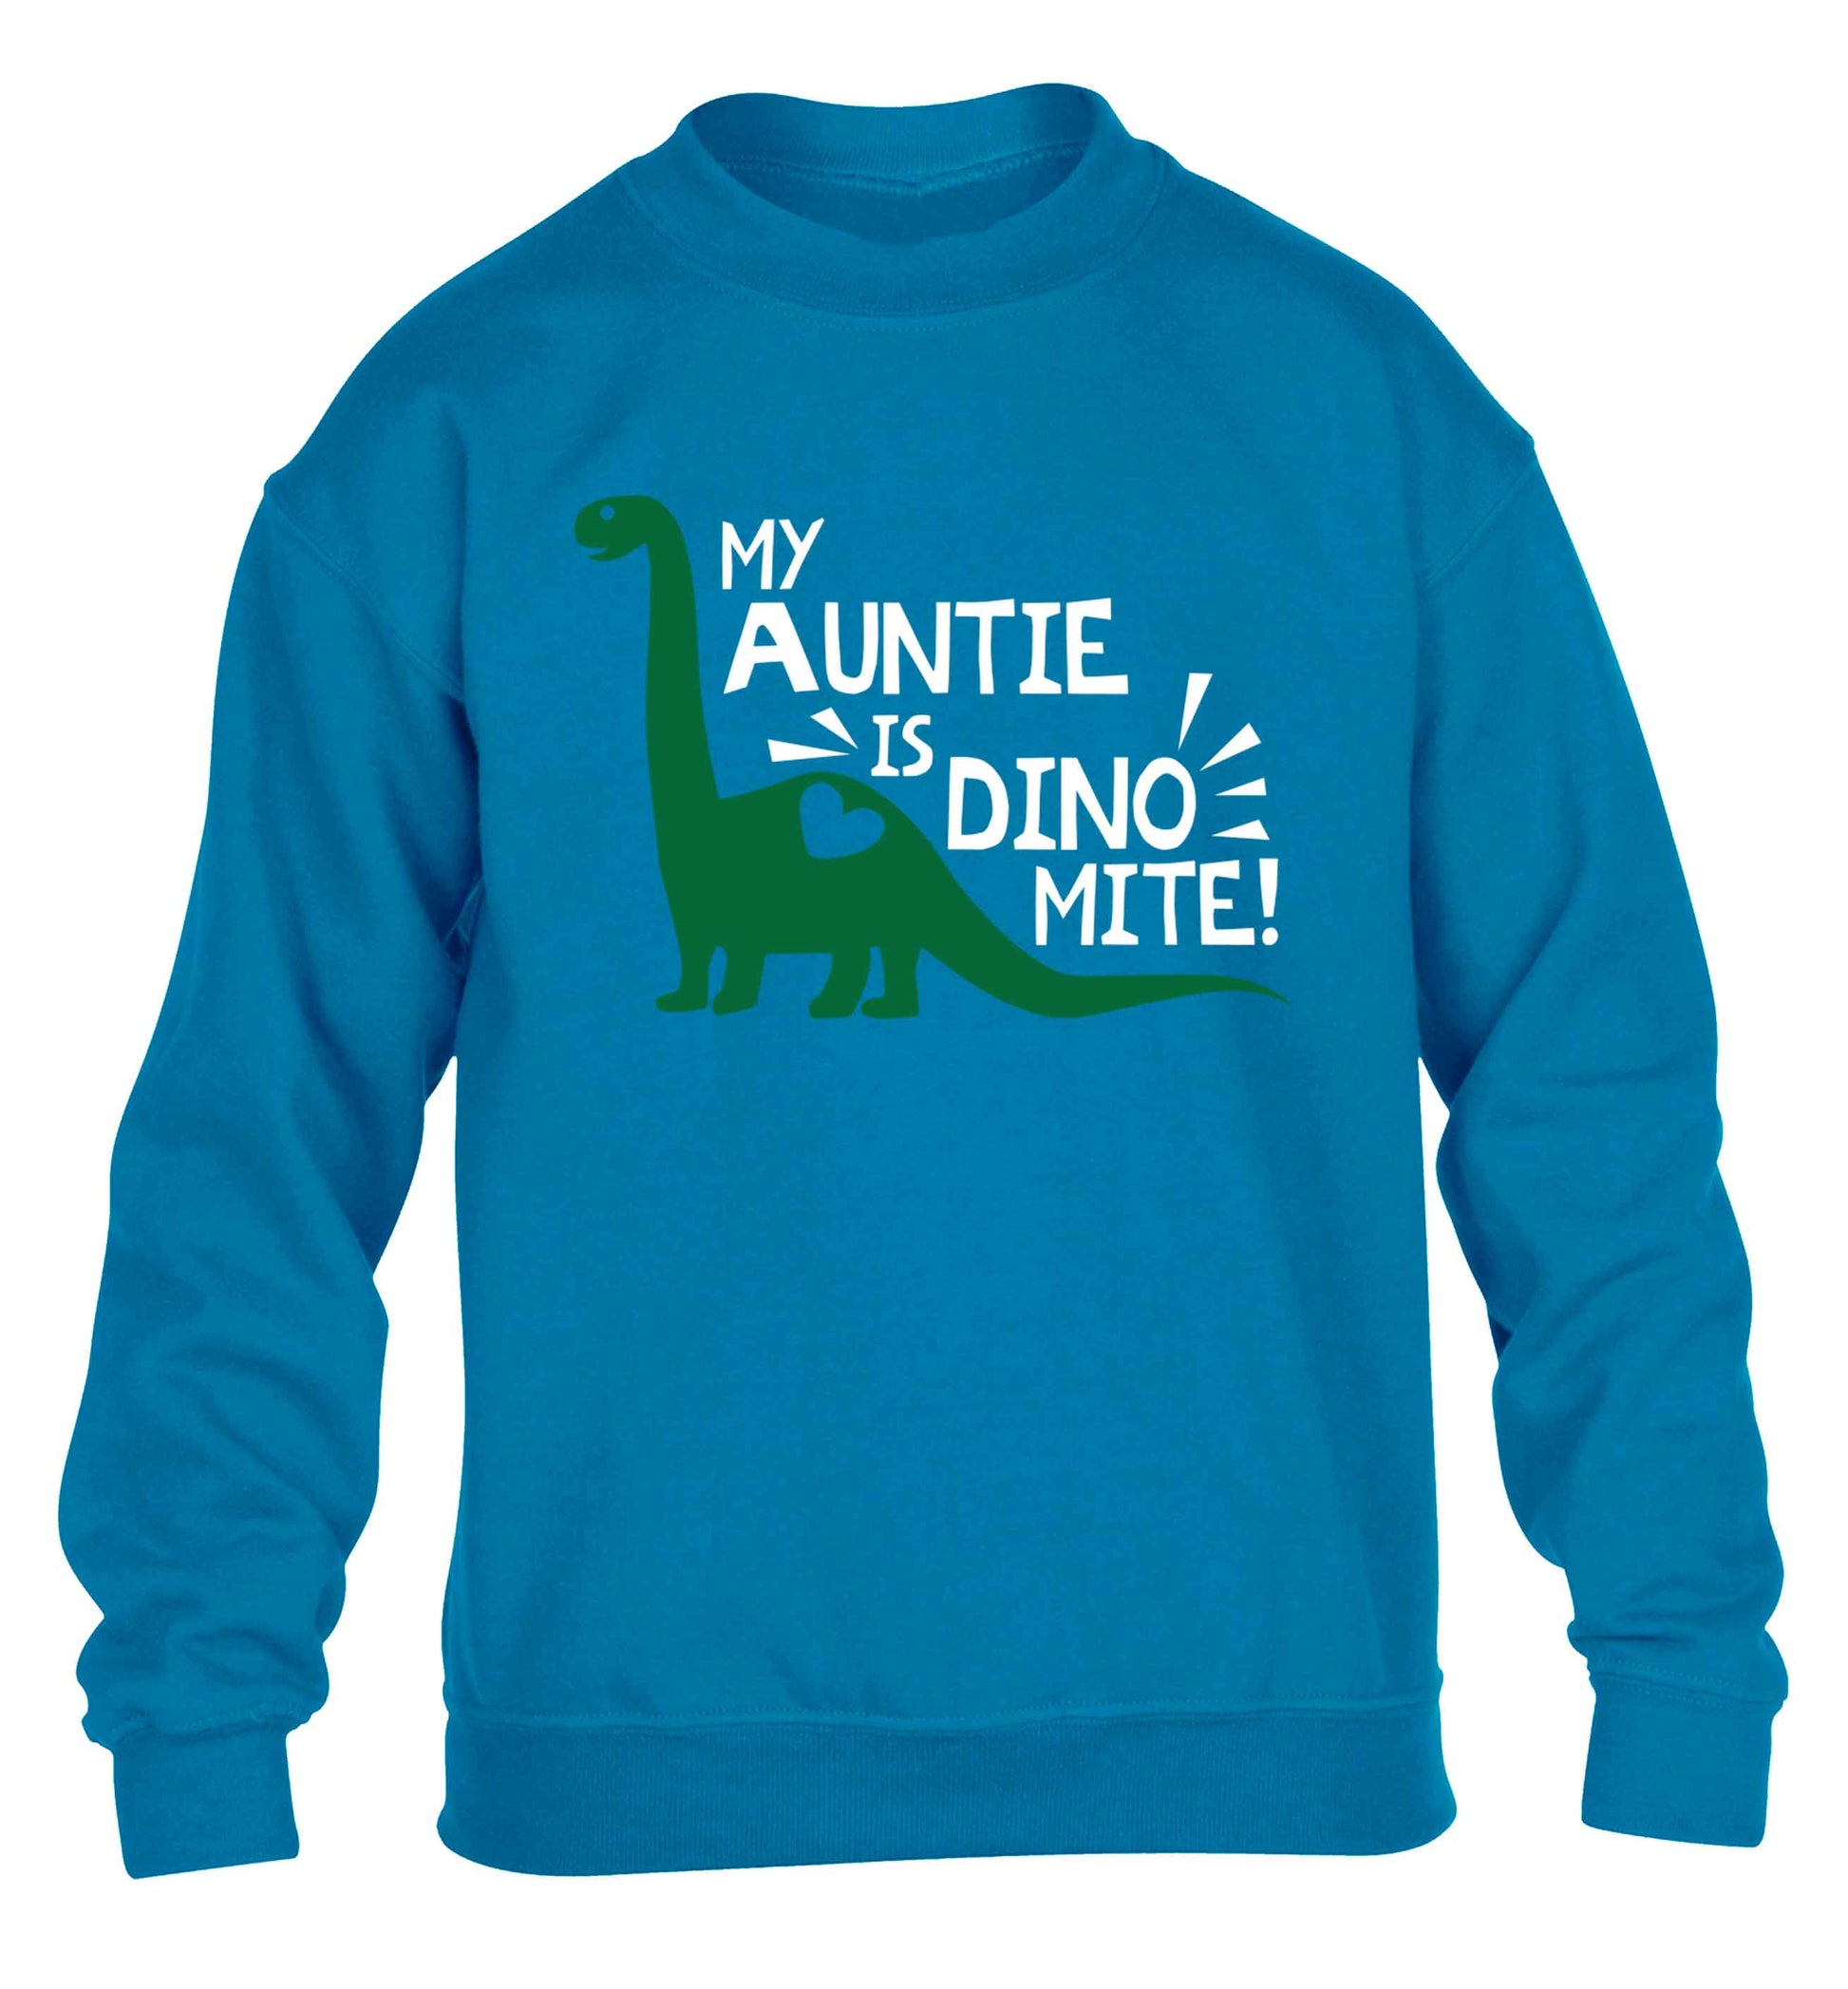 My auntie is dinomite! children's blue sweater 12-13 Years